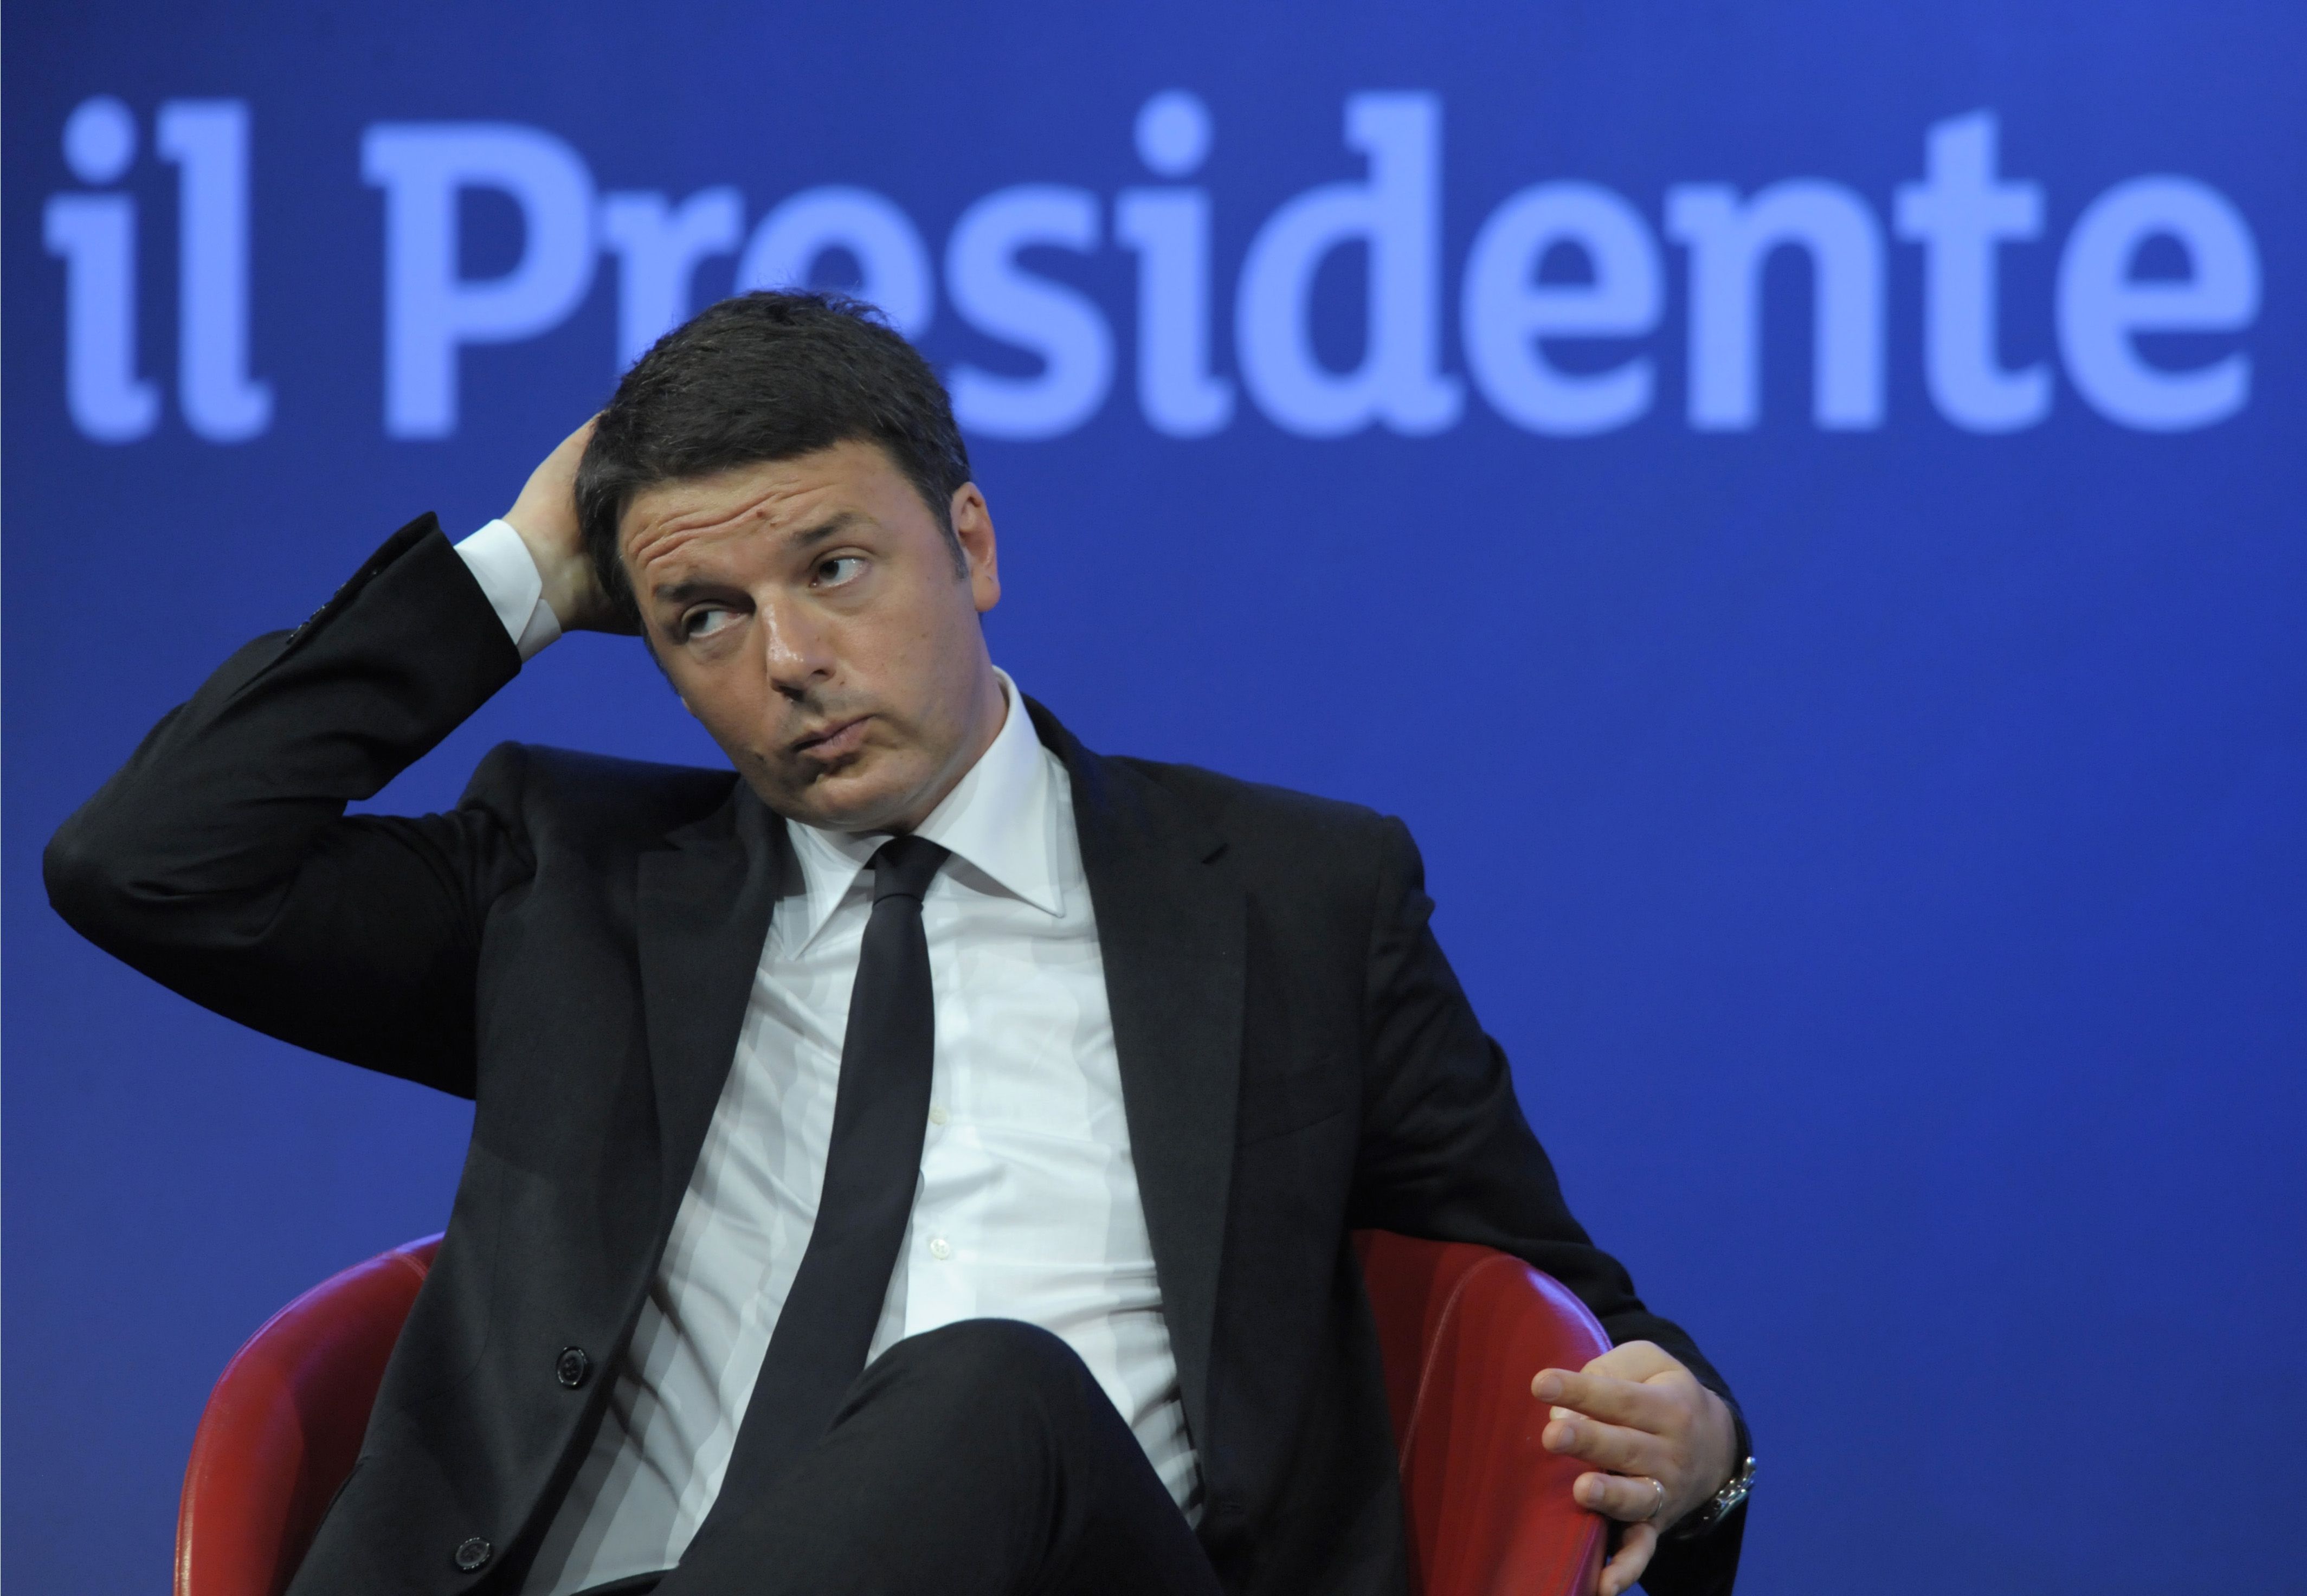 Lemondott két miniszter, kormányválság van Olaszországban